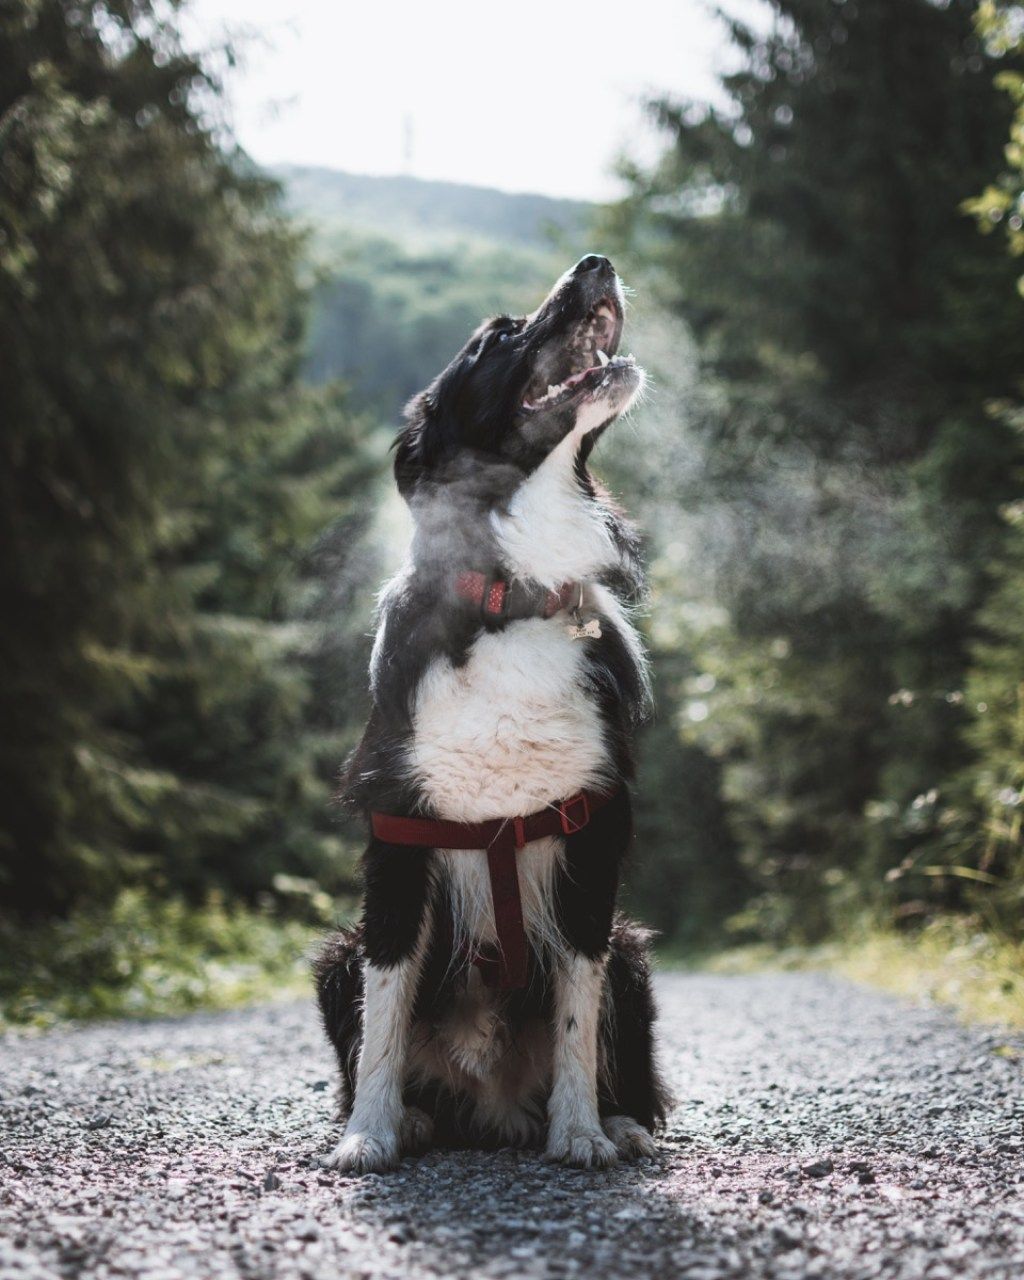 כלב שמסתכל בשמיים דברים שמעולם לא ידעתם שכלבים יכולים לעשות